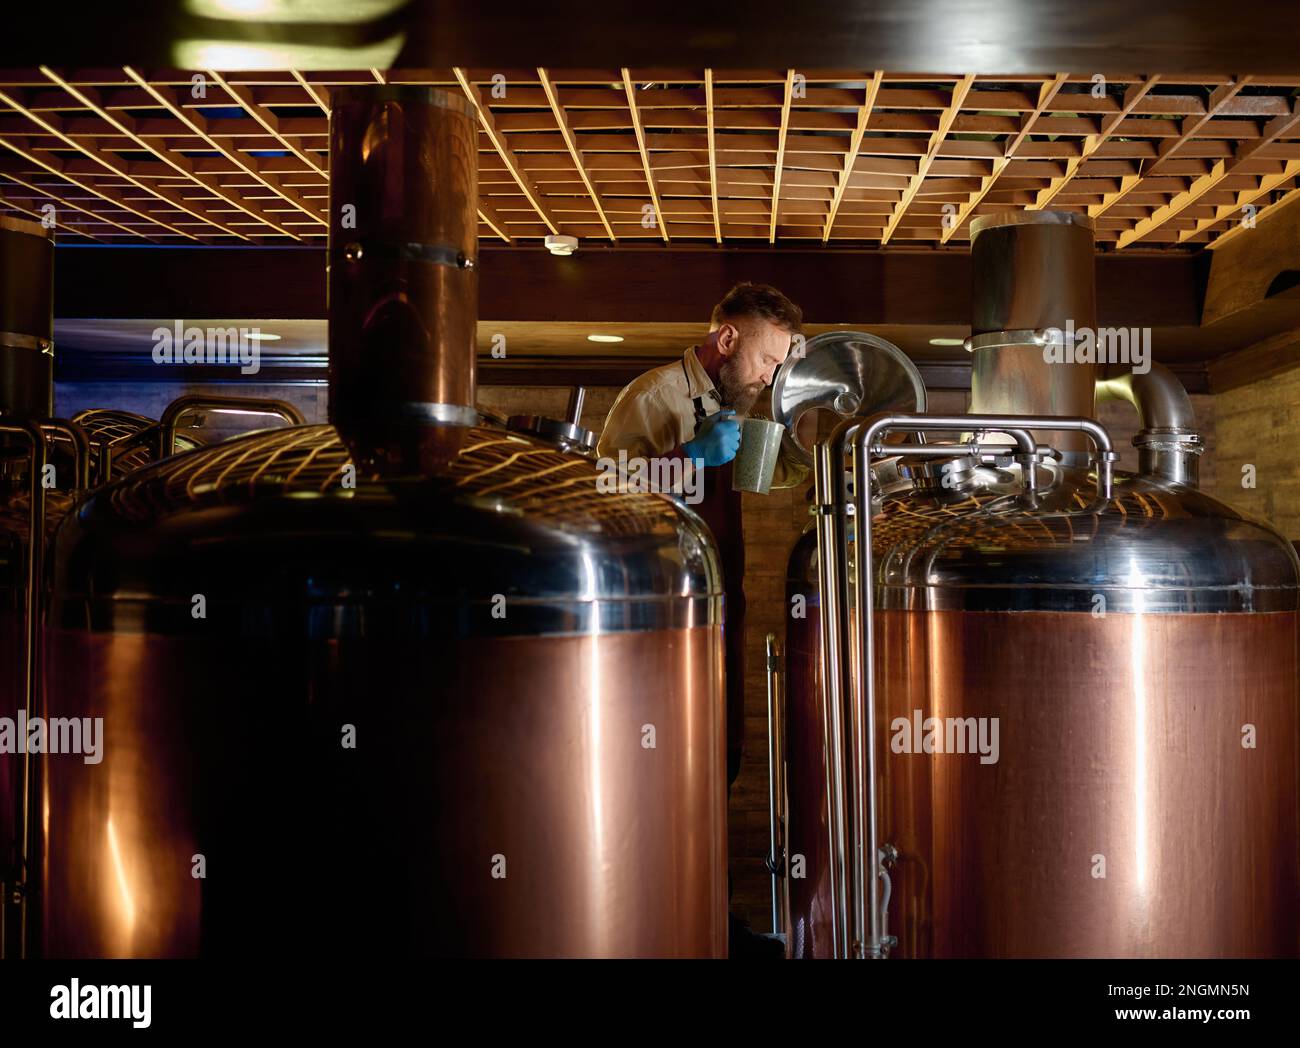 https://c8.alamy.com/comp/2NGMN5N/copper-boil-kettle-and-distillery-tanks-in-craft-beer-brewery-2NGMN5N.jpg